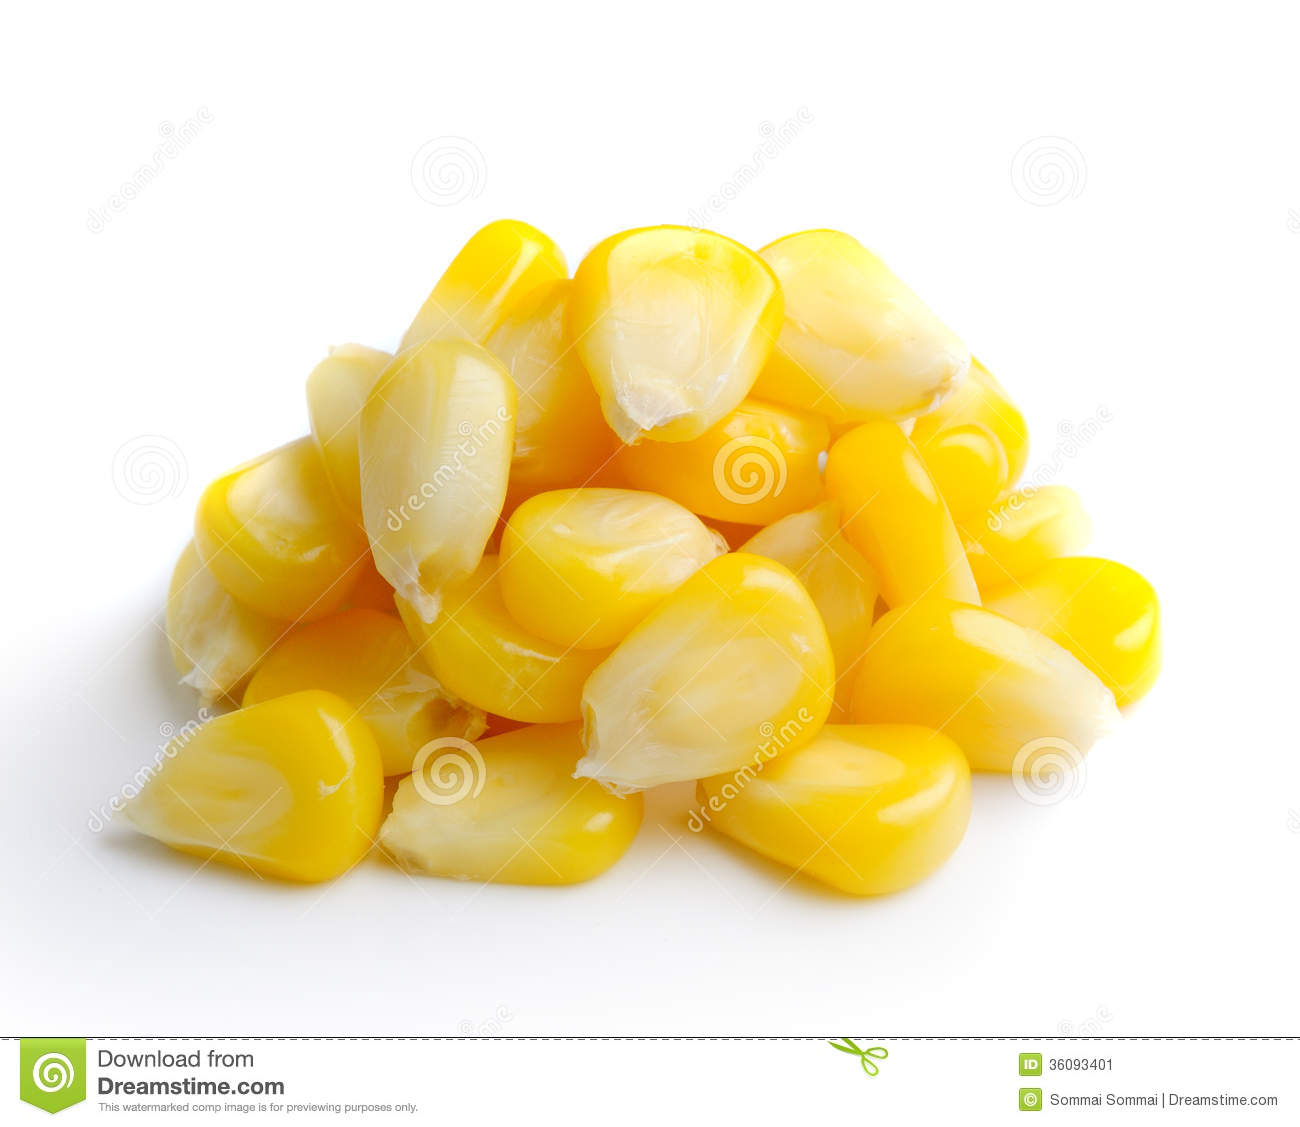 Sweet Whole Kernel Corn Stock Image   Image  36093401